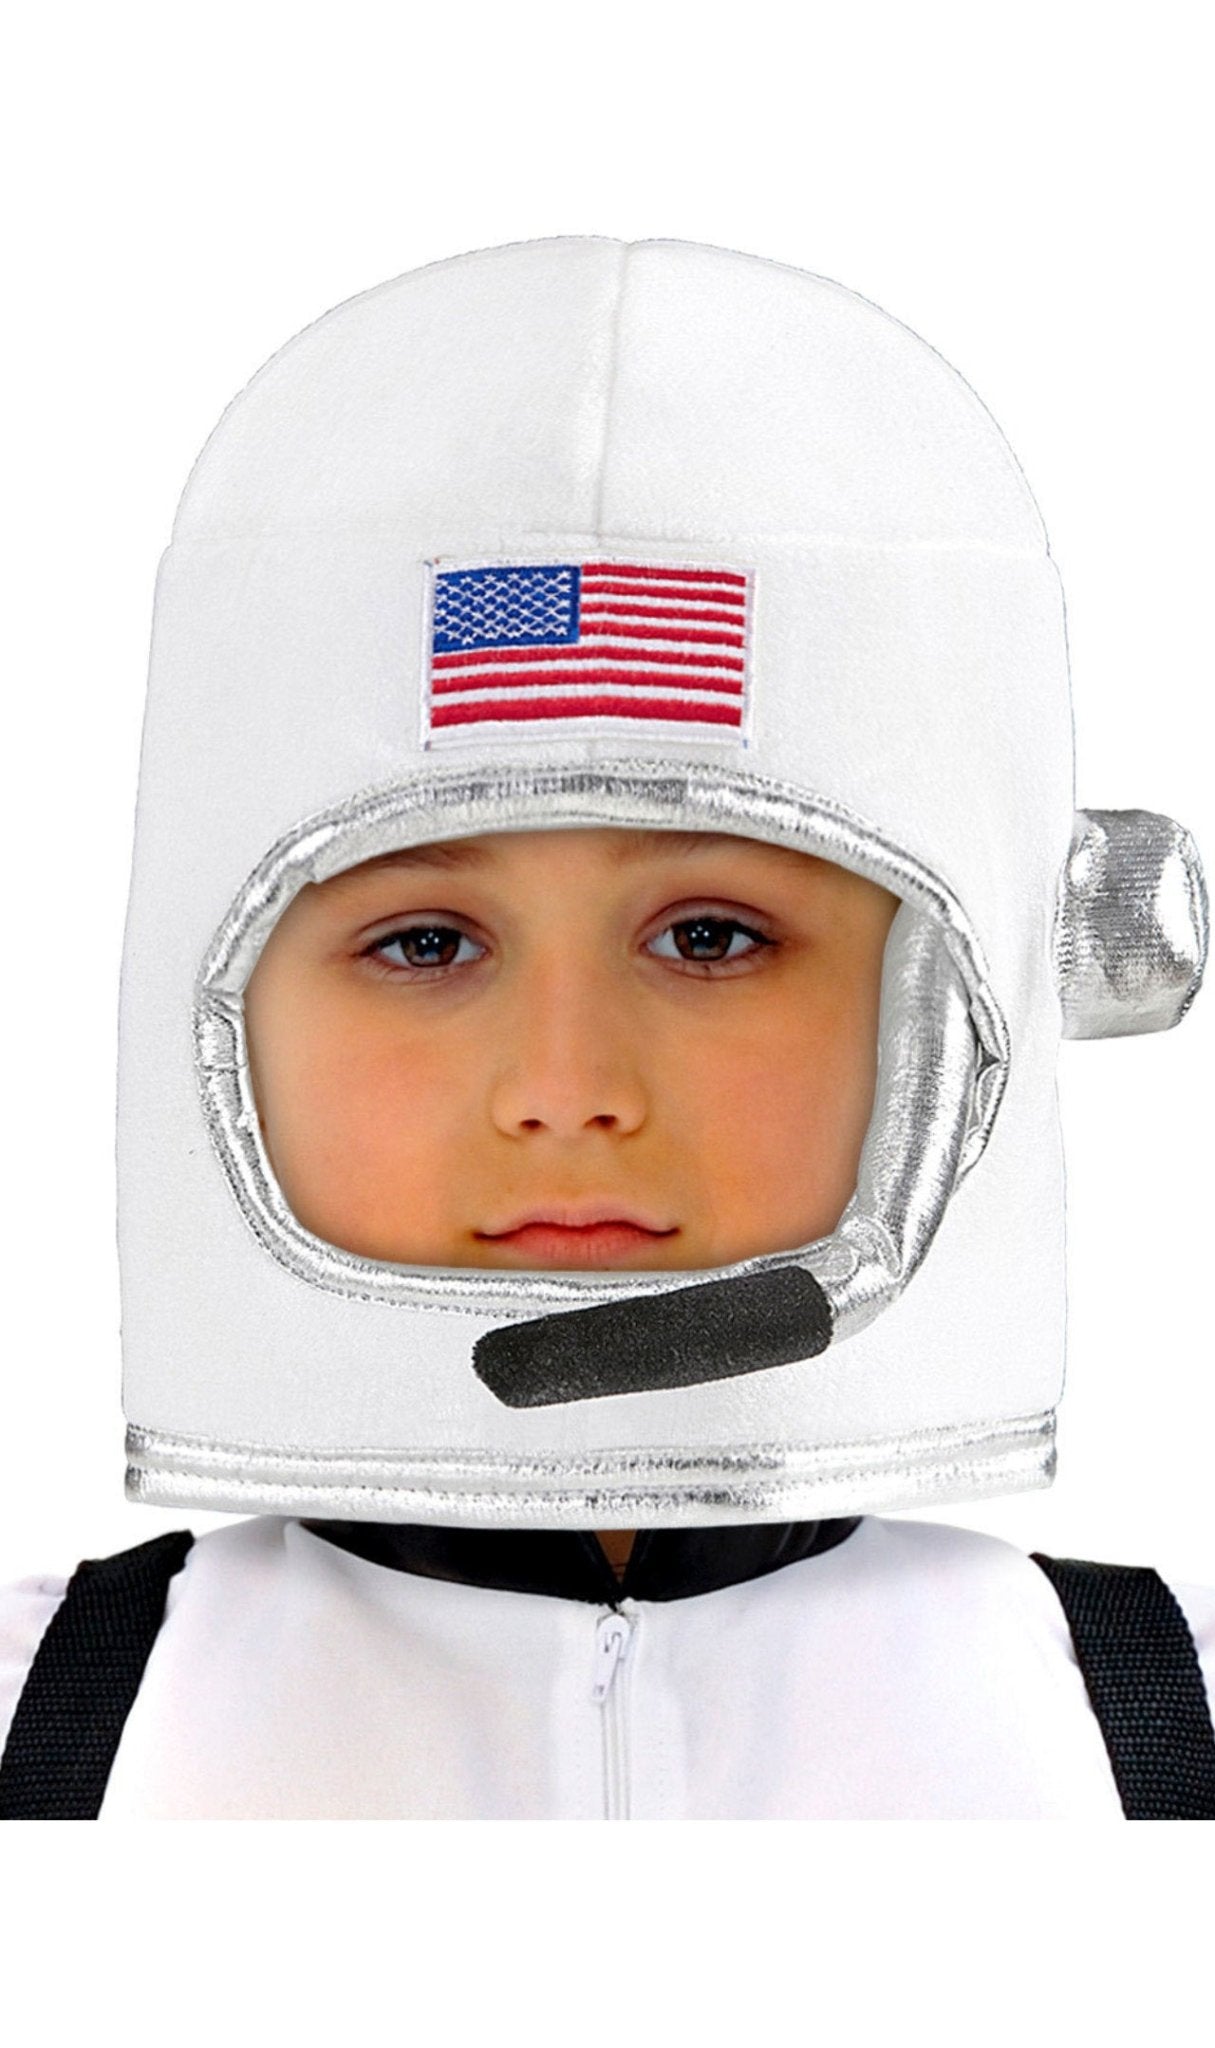 Casco de Astronauta para adulto